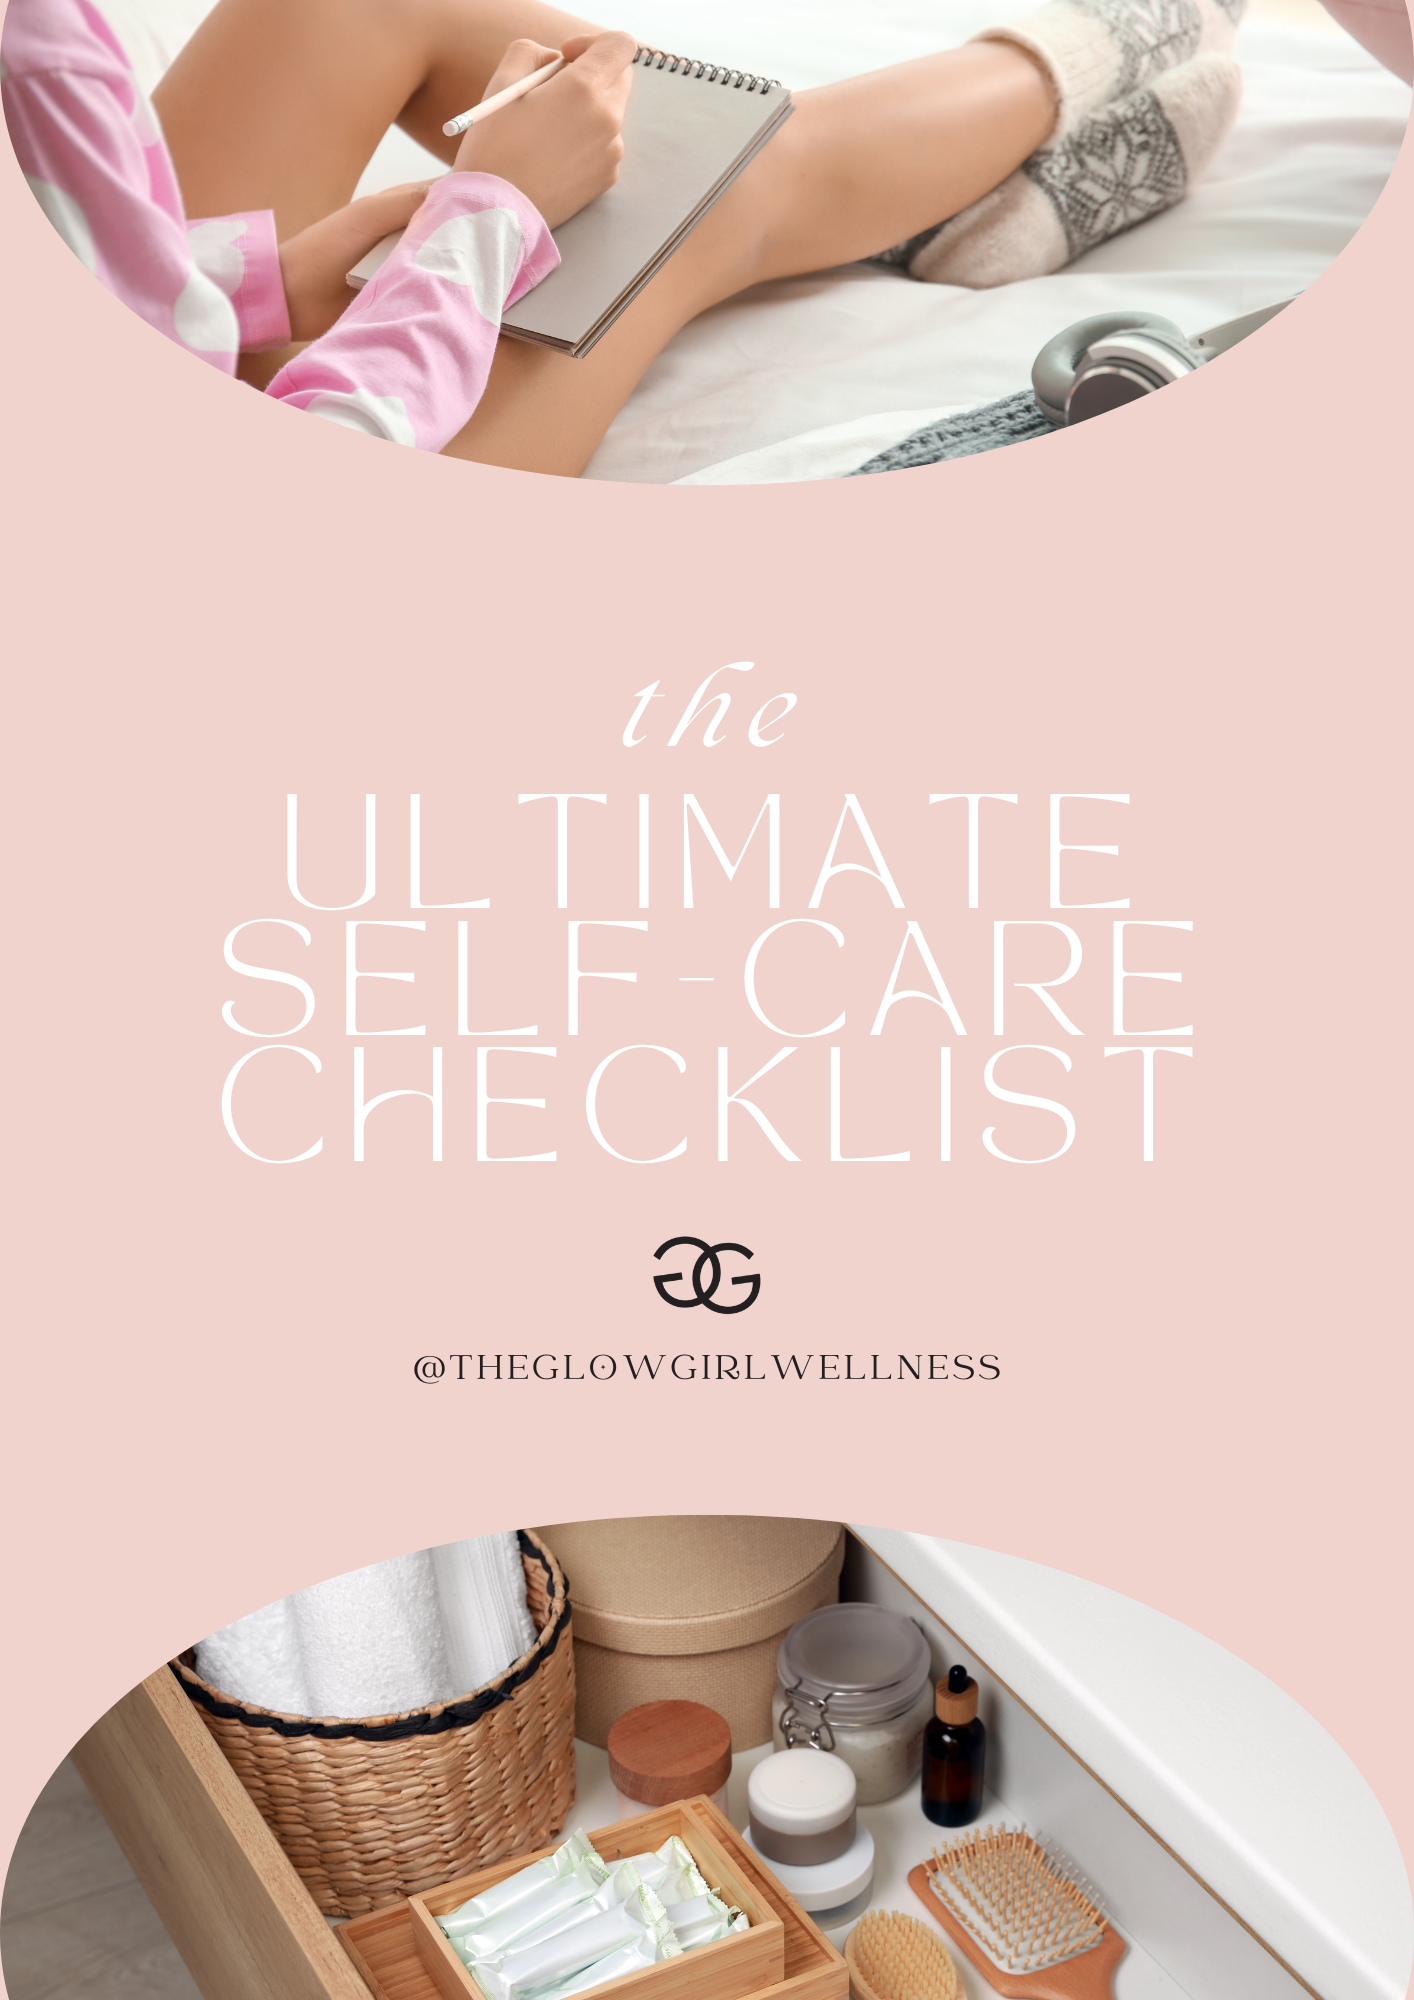 The Ultimate Self-Care Checklist